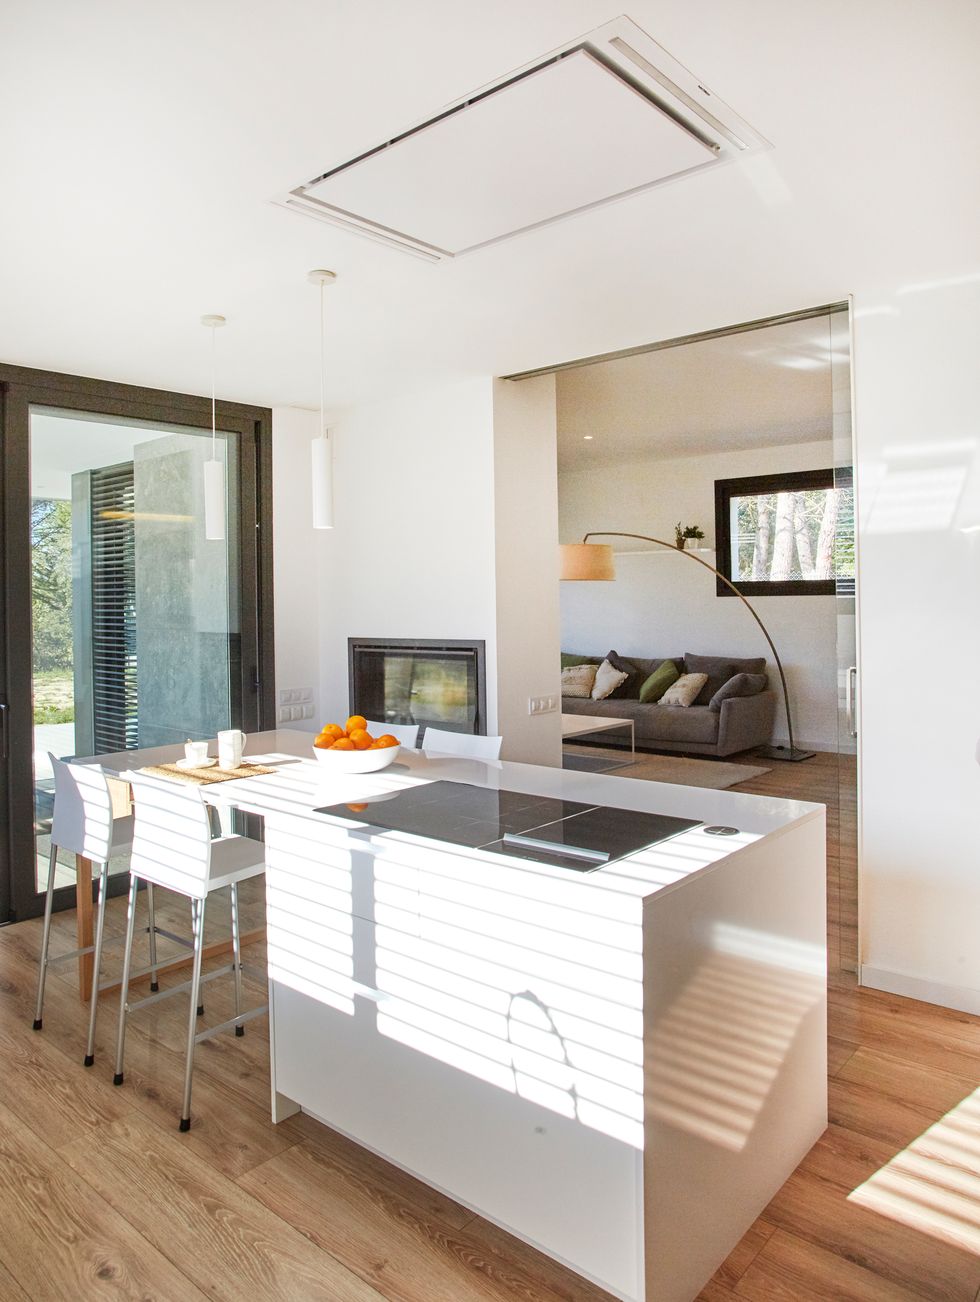 cocina moderna con isla central diseñada en color blanco y puertas sin tiradores